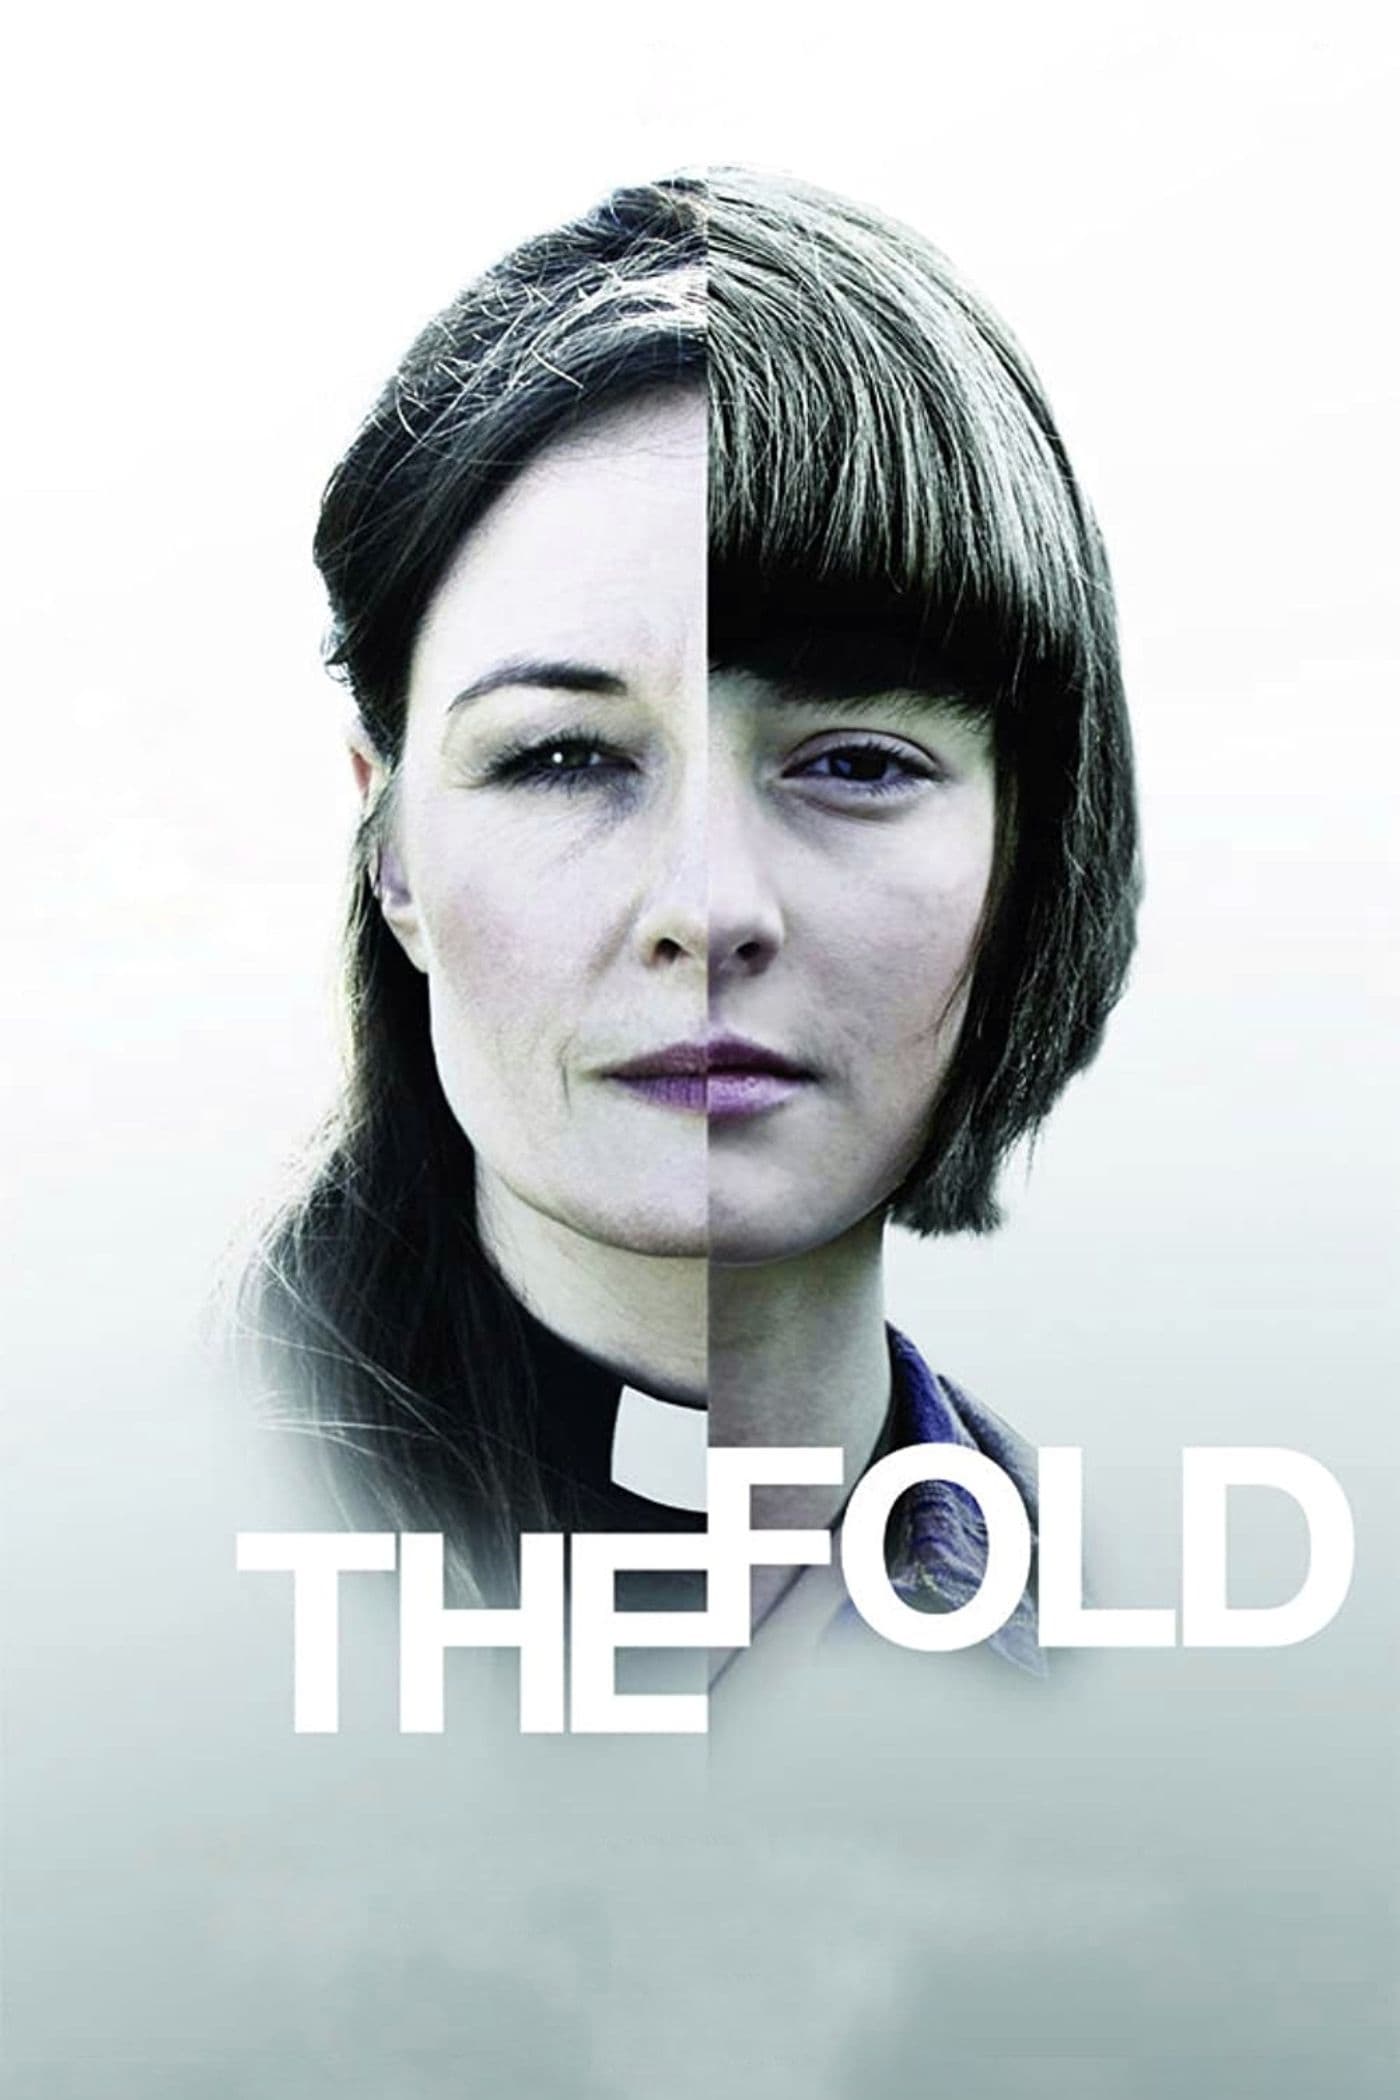 The Fold (2014)